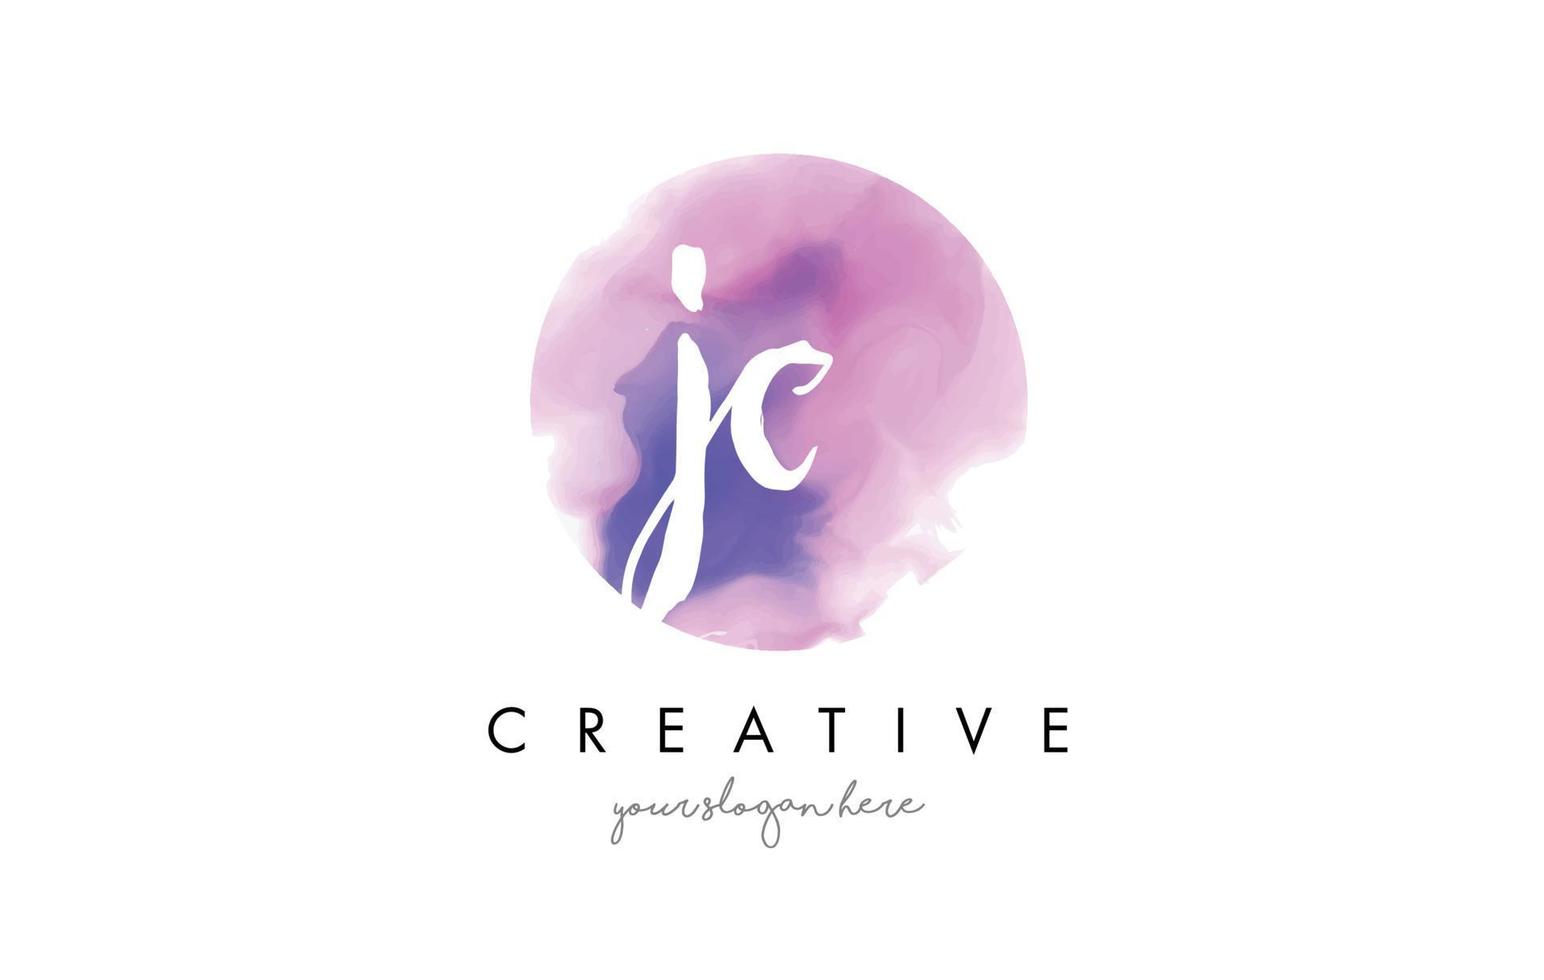 Diseño de logotipo letra acuarela jc con trazo de pincel morado. vector